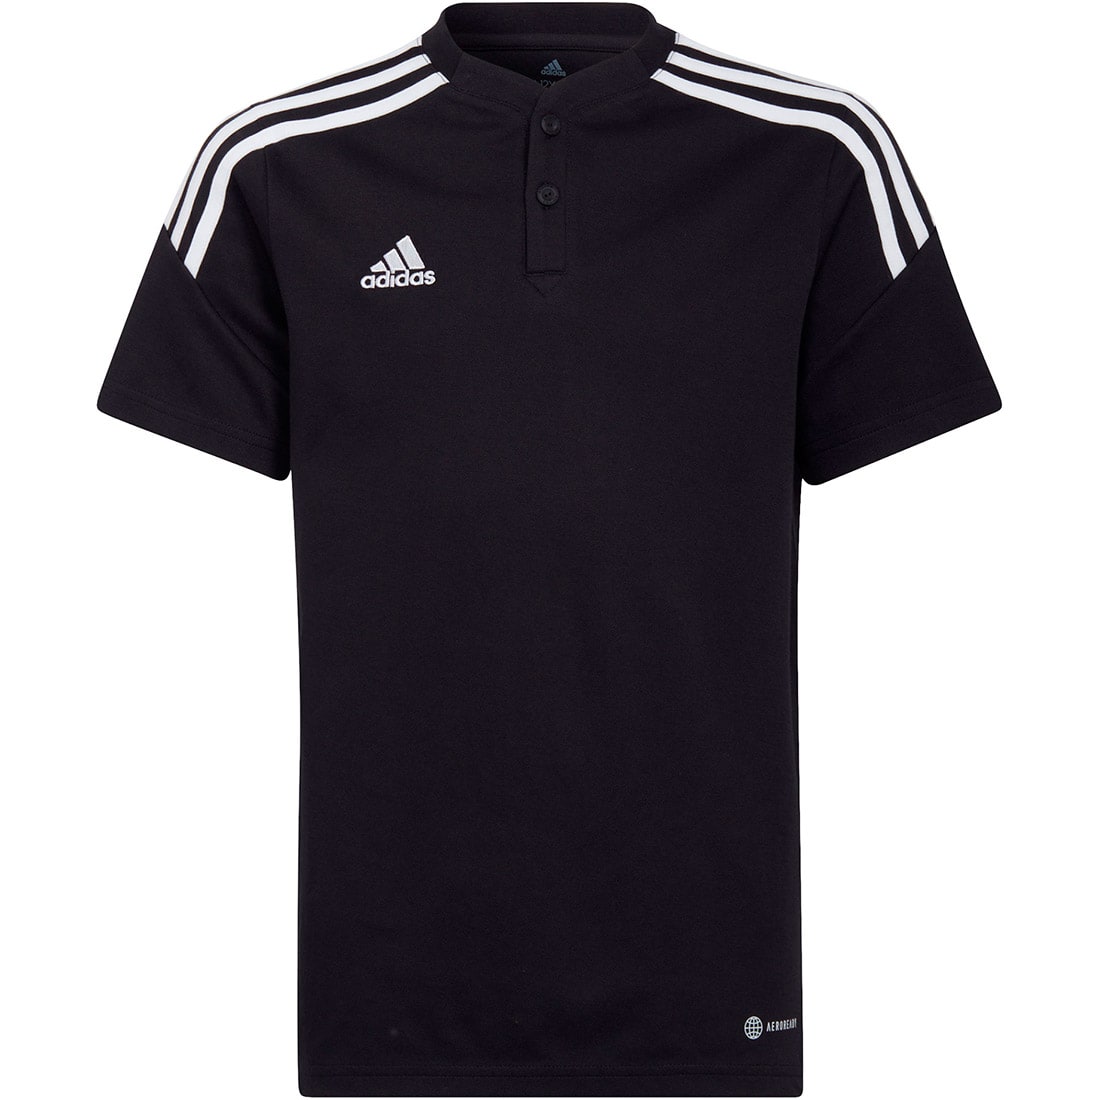 Adidas Kinder Poloshirt Condivo 22 schwarz-weiß